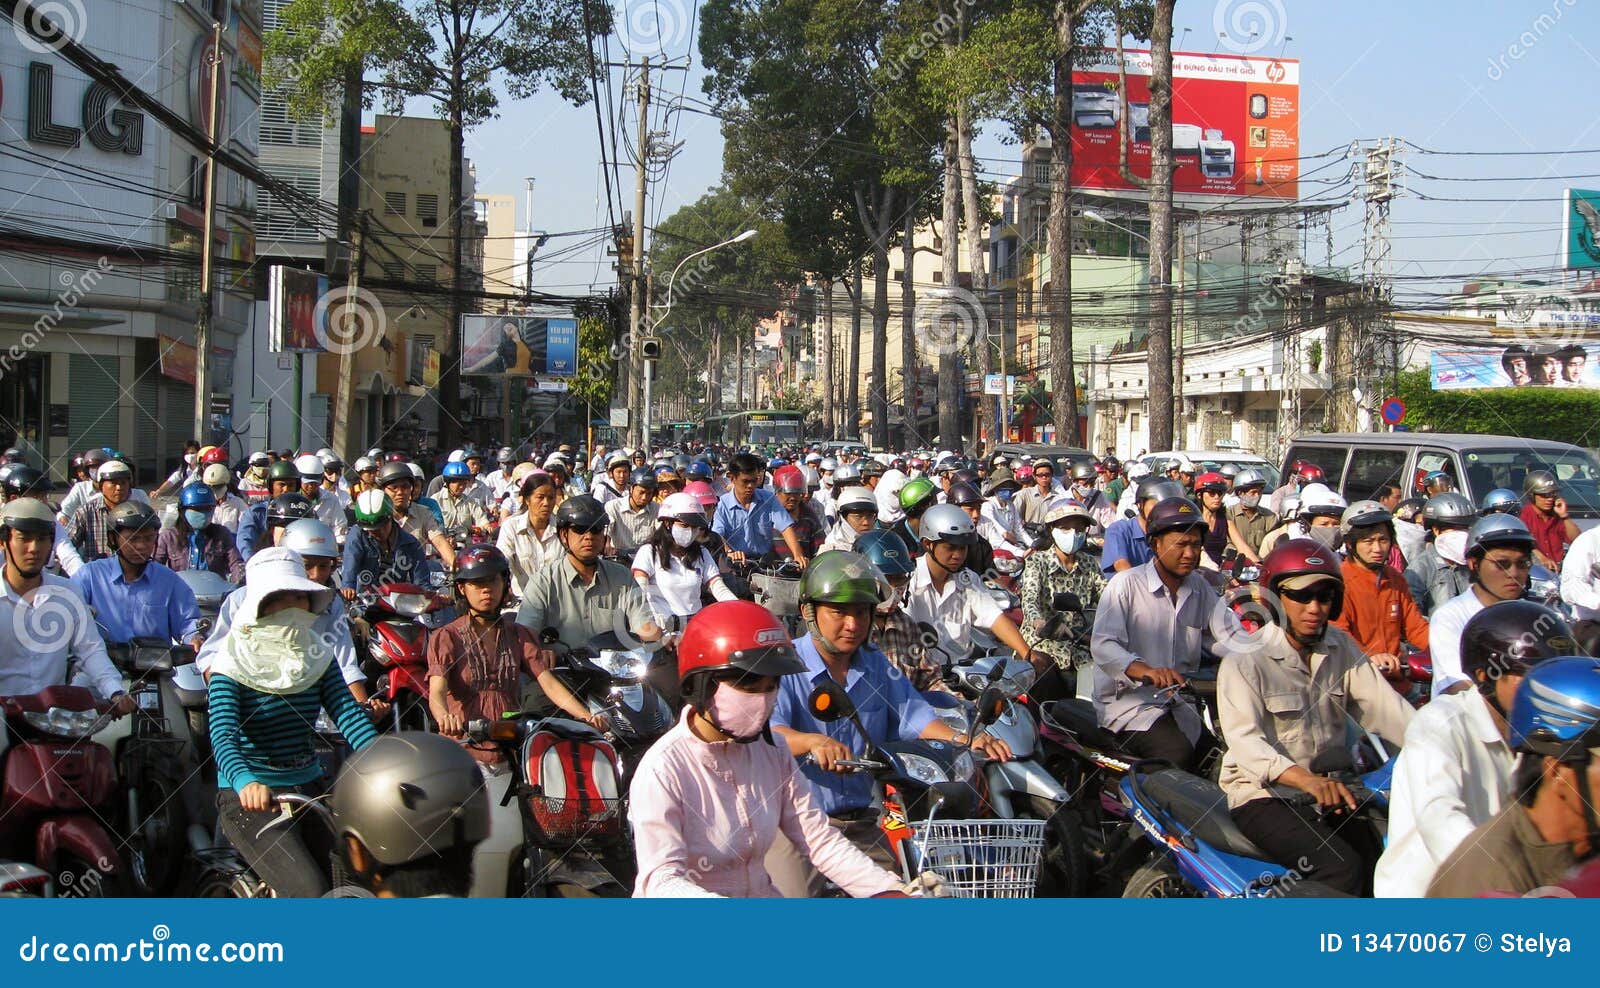 traffic-jam-ho-chi-minh-city-vietnam-13470067.jpg